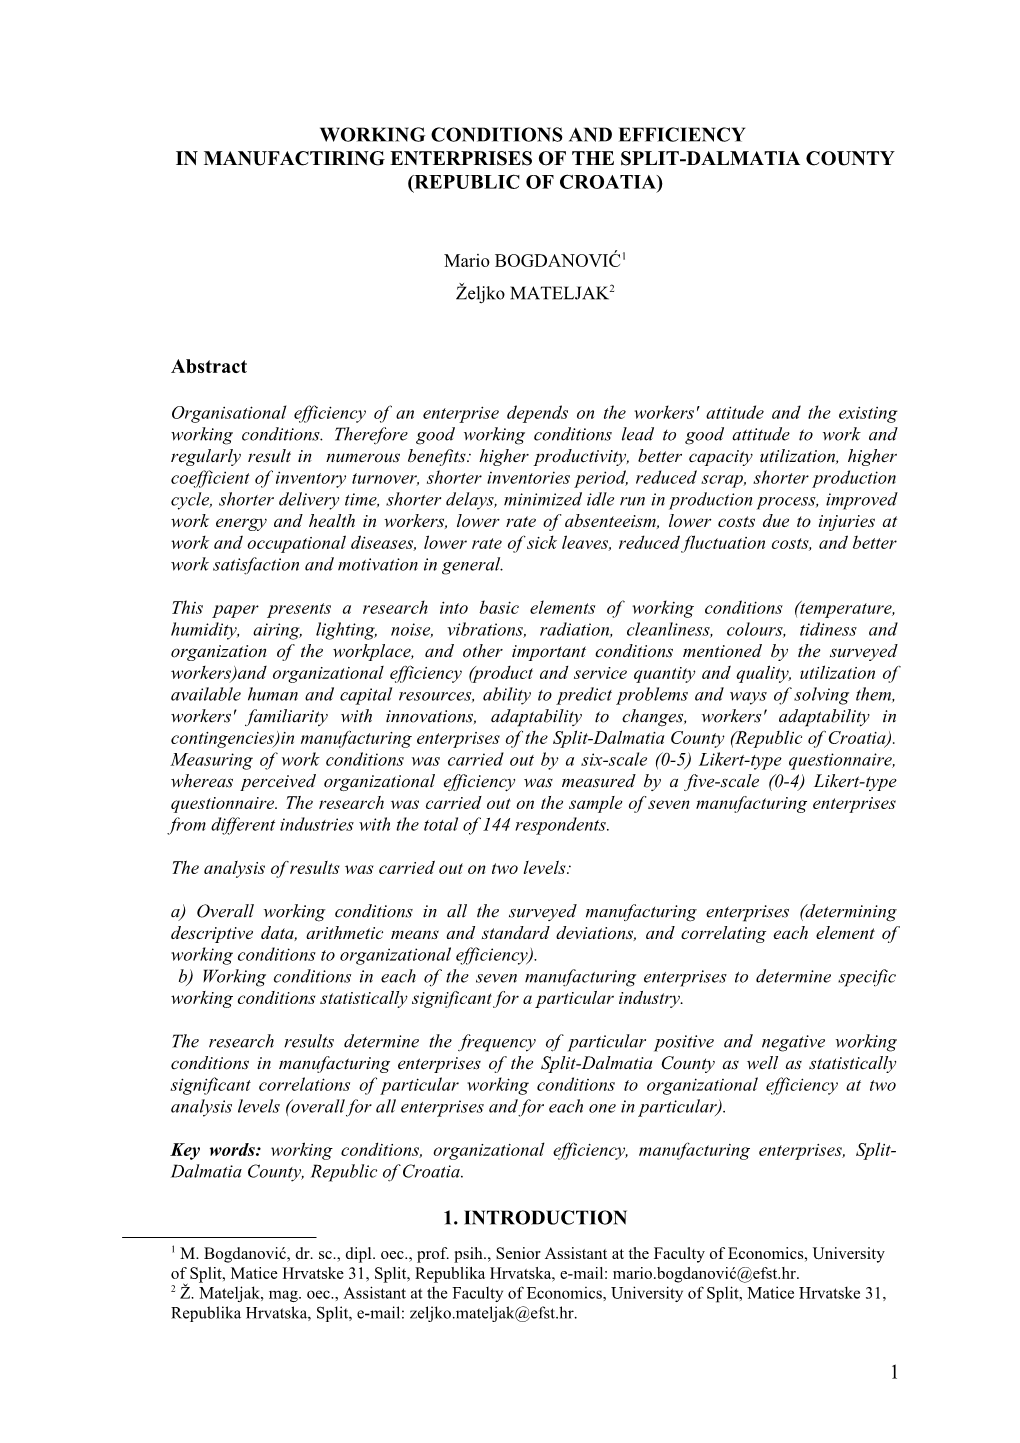 Radni Uvjeti I Djelotvornost Proizvodnih Poduzeća Splitsko Dalmatinske-Županije (Republika